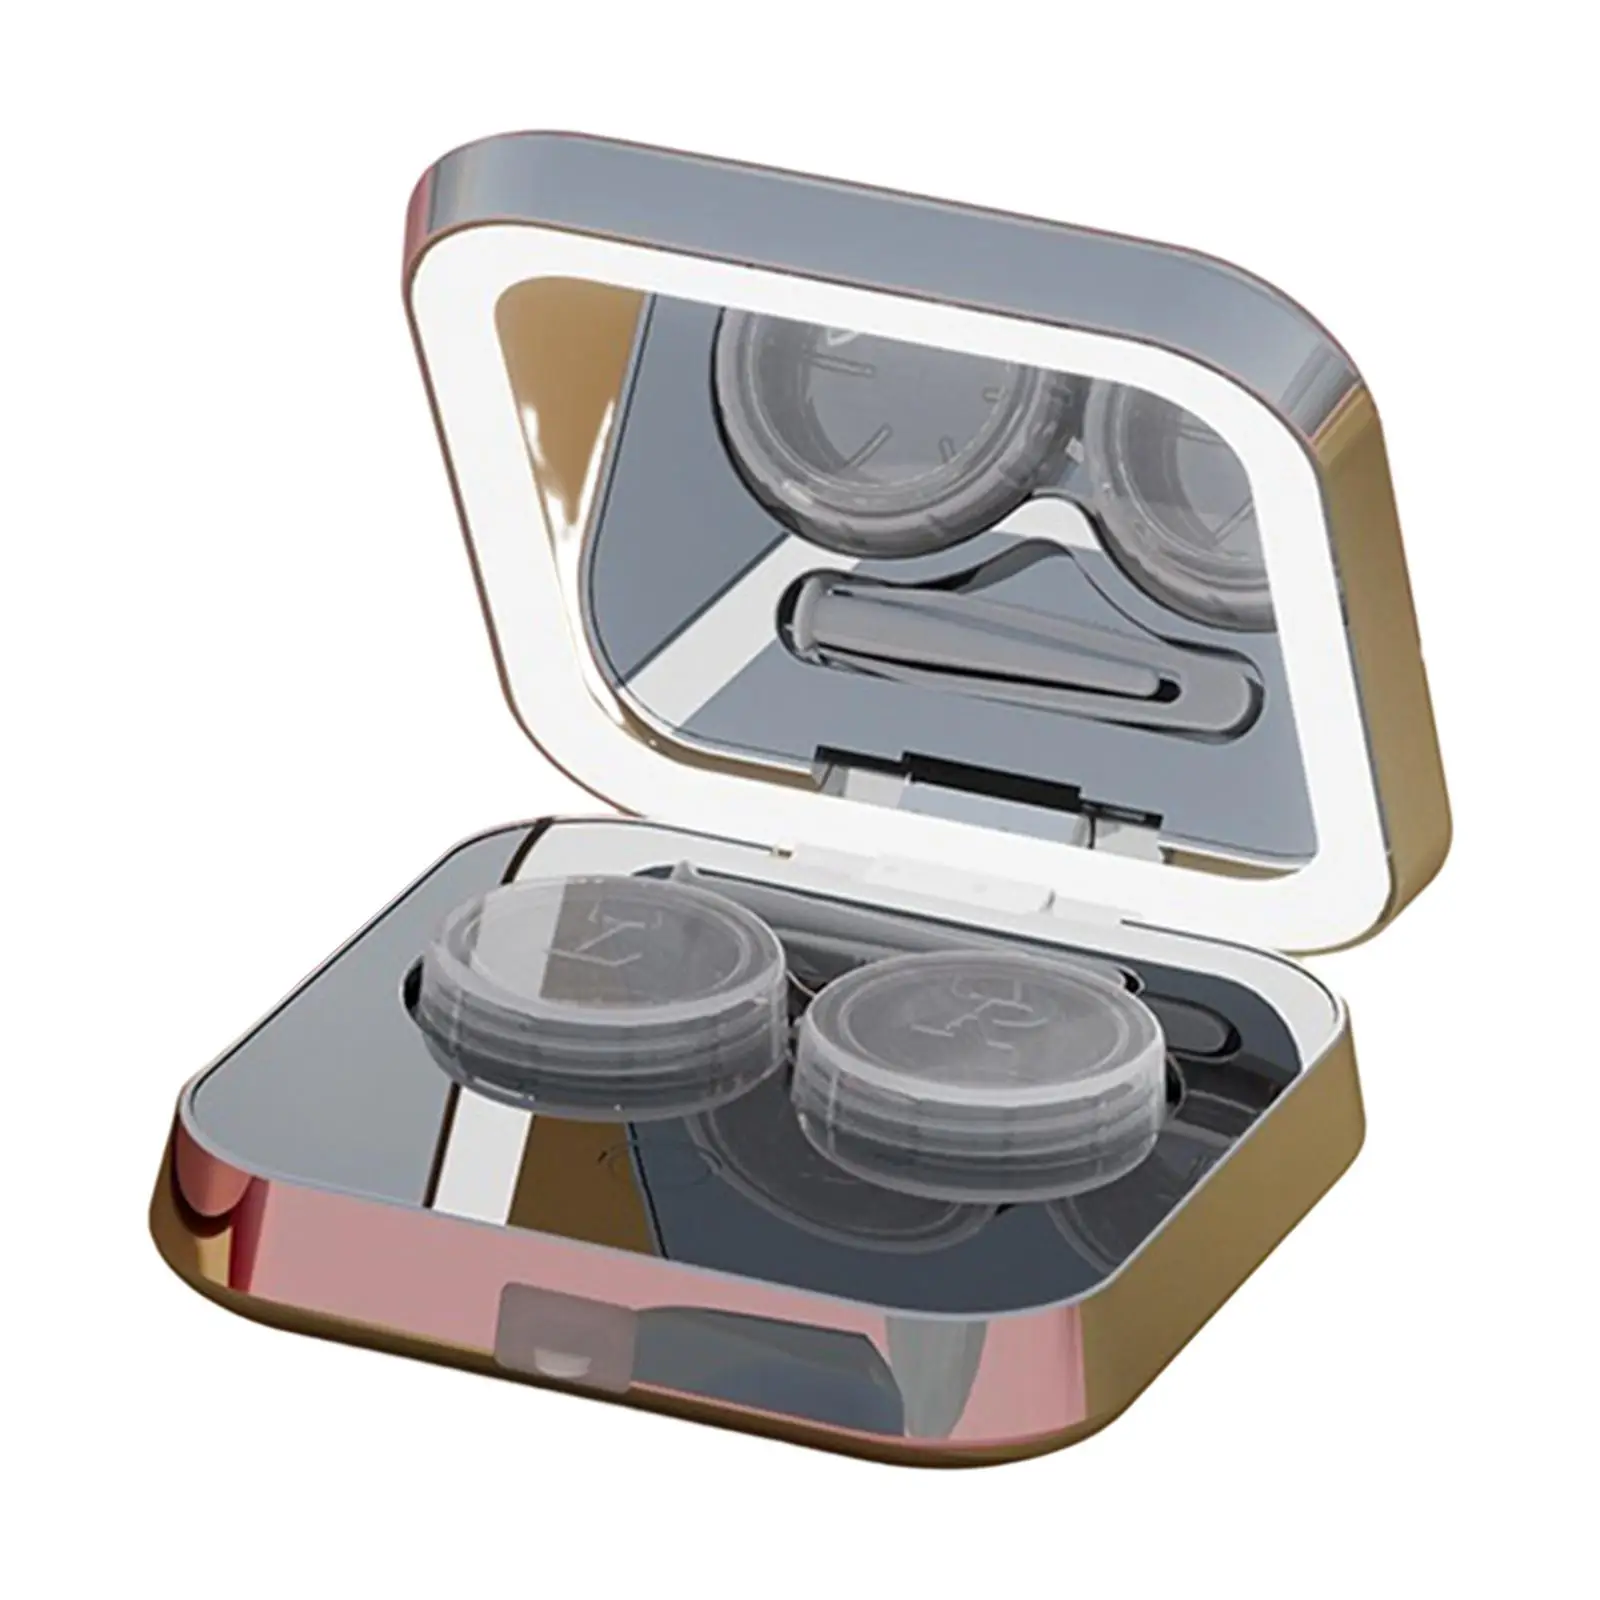  контактни лещи ултразвукови с огледални пинсети мини държач контейнер за съхранение почистване кутия око контакт лещи случай възрастни мъже жени 4